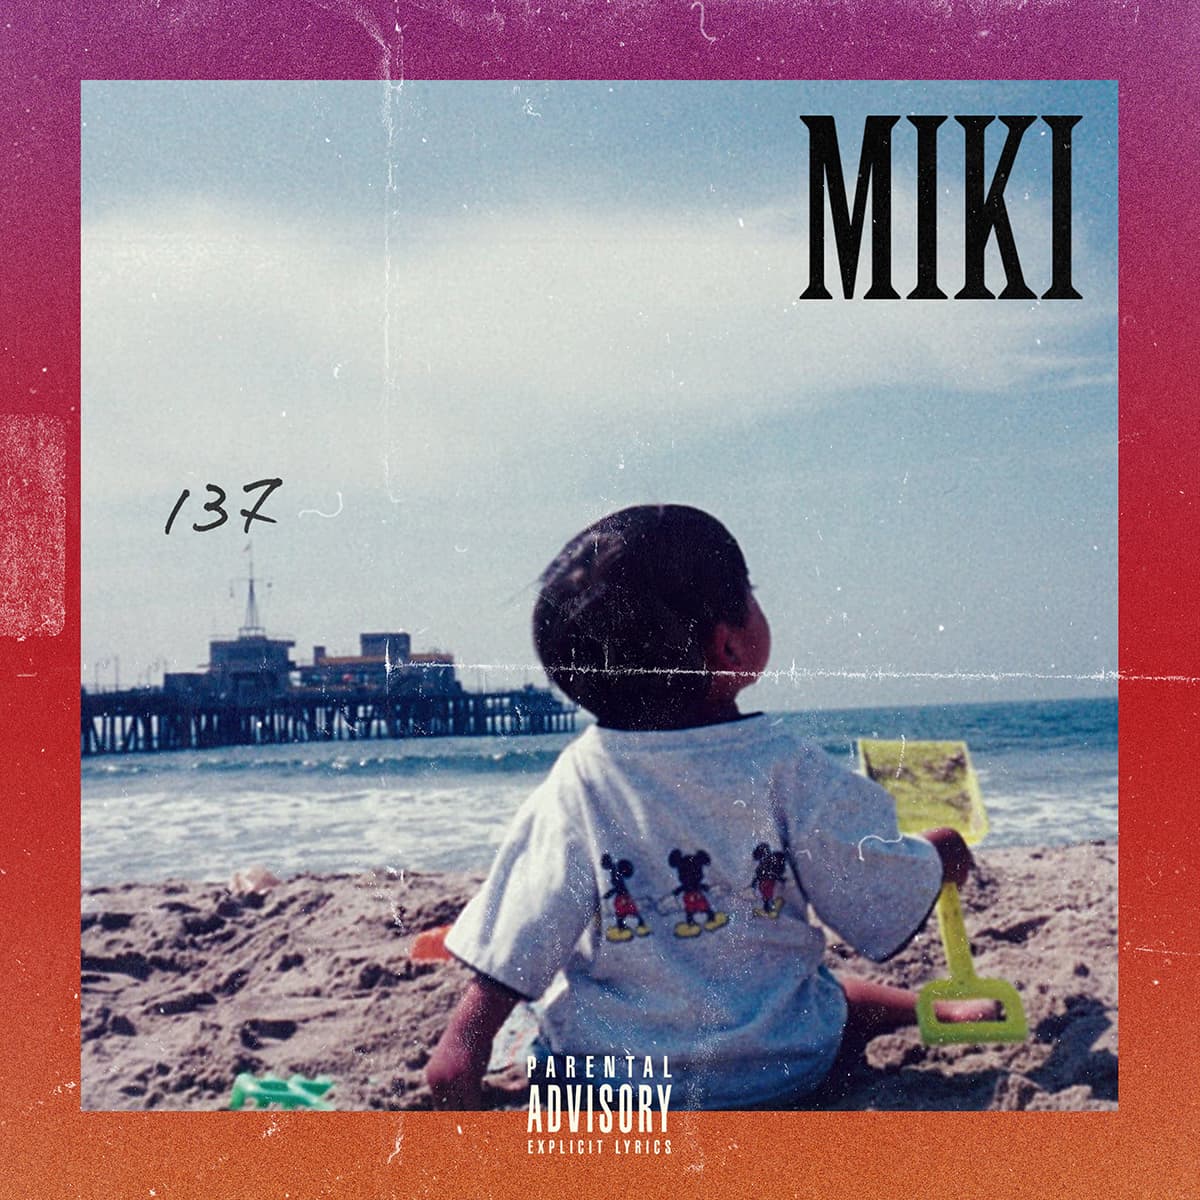 MIKI (KANDYTOWN) - 1st Album "137" Release